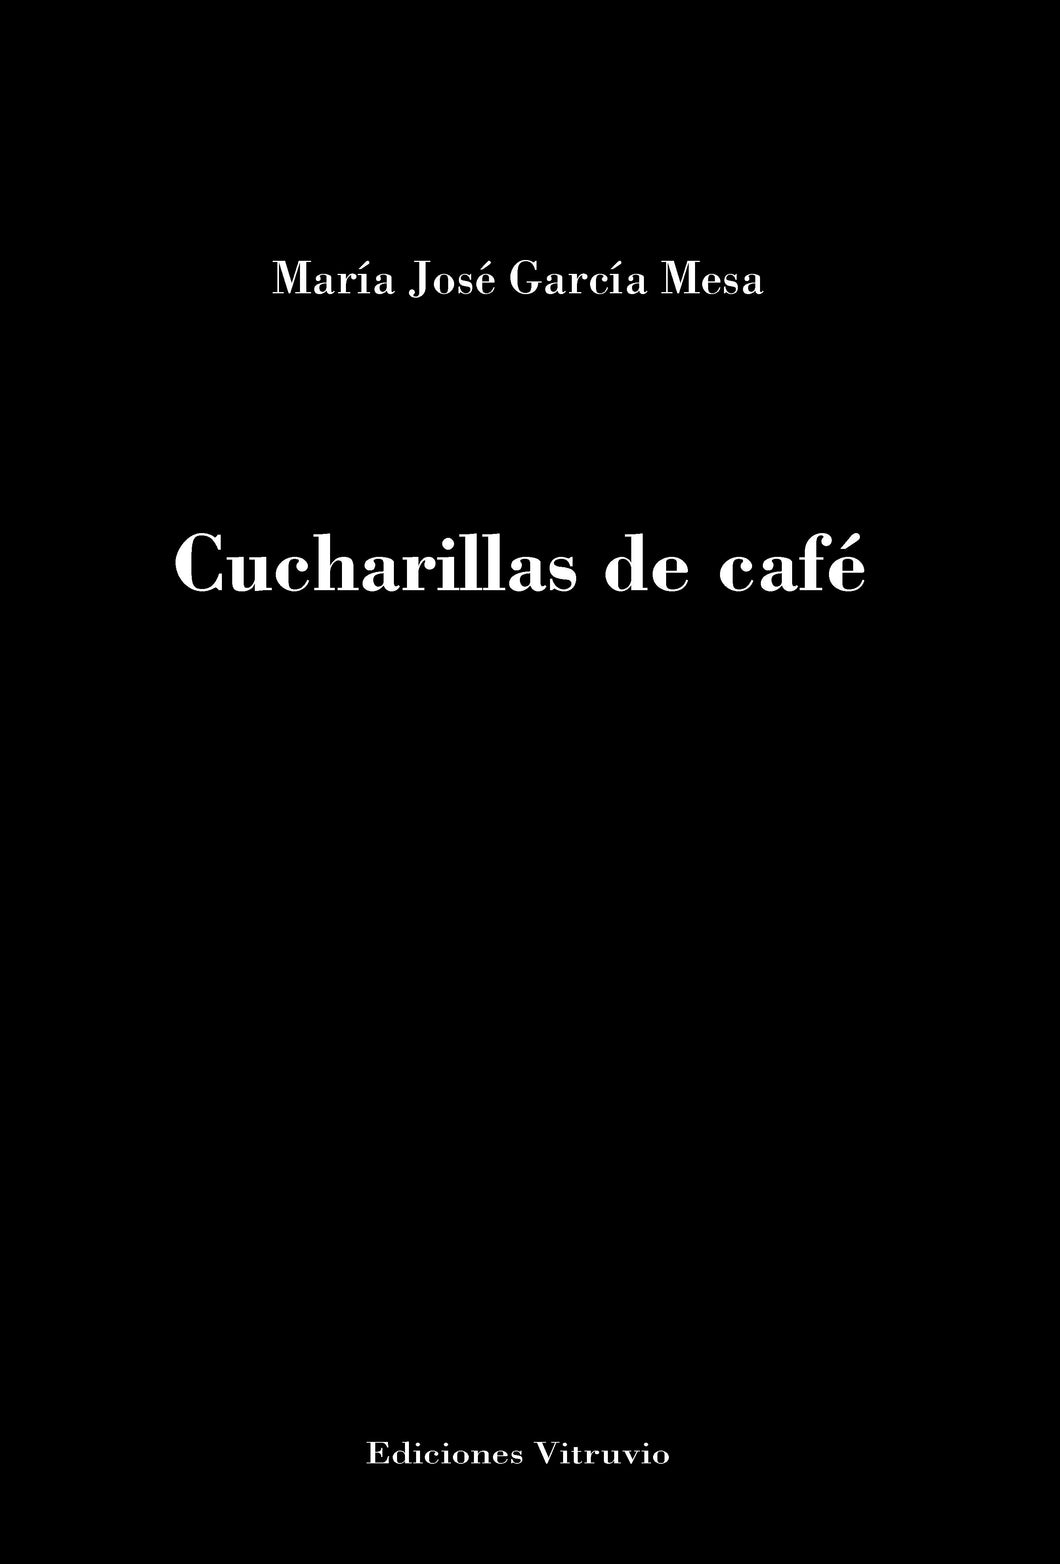 Cucharillas de café de María José García Mesa